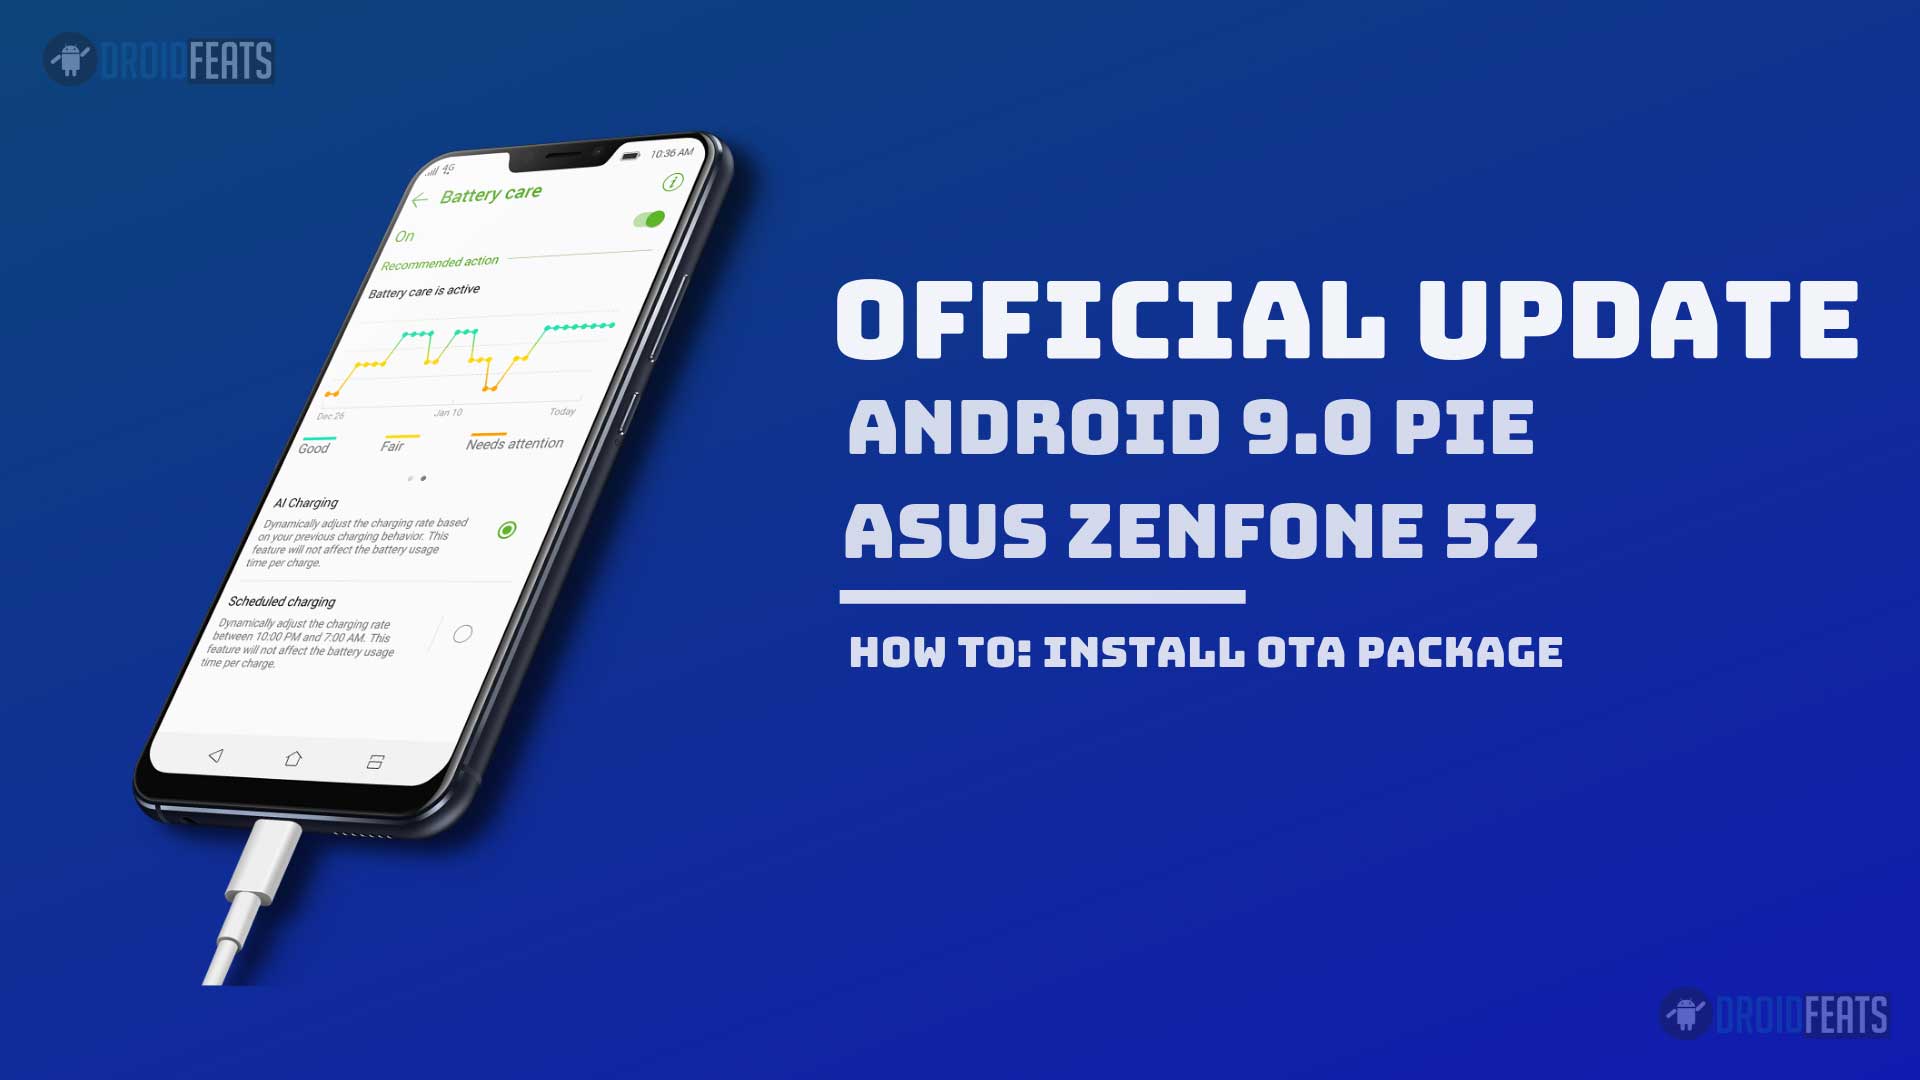 ASUS Zenfone 5Z Android Pie Update